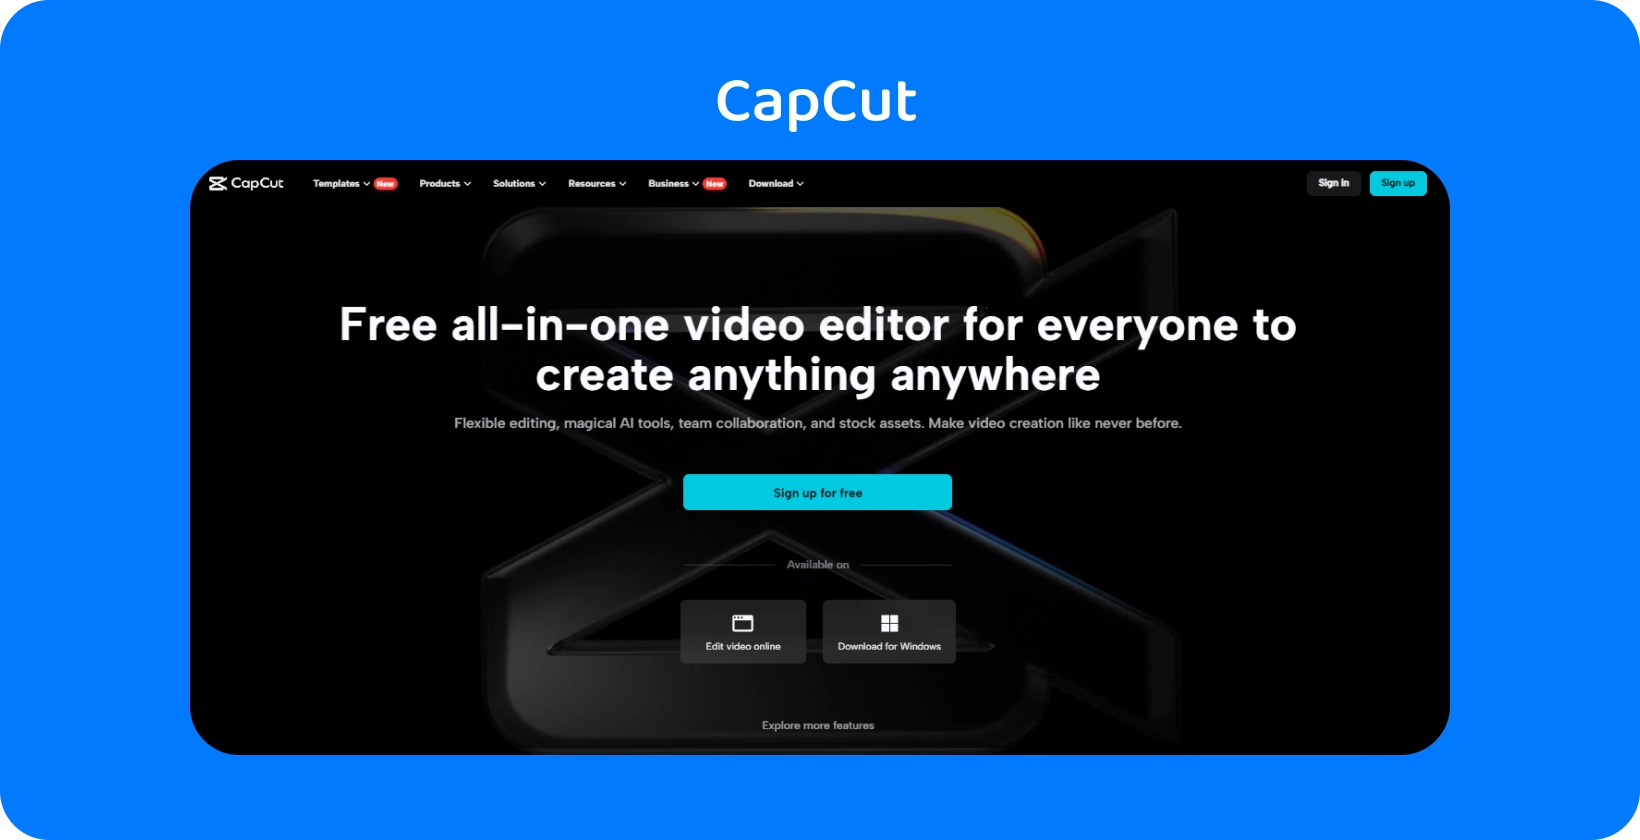 La page d’accueil de CapCut présente un éditeur vidéo tout-en-un gratuit pour créer du contenu sur n’importe quel appareil, avec un design sombre et élégant.
